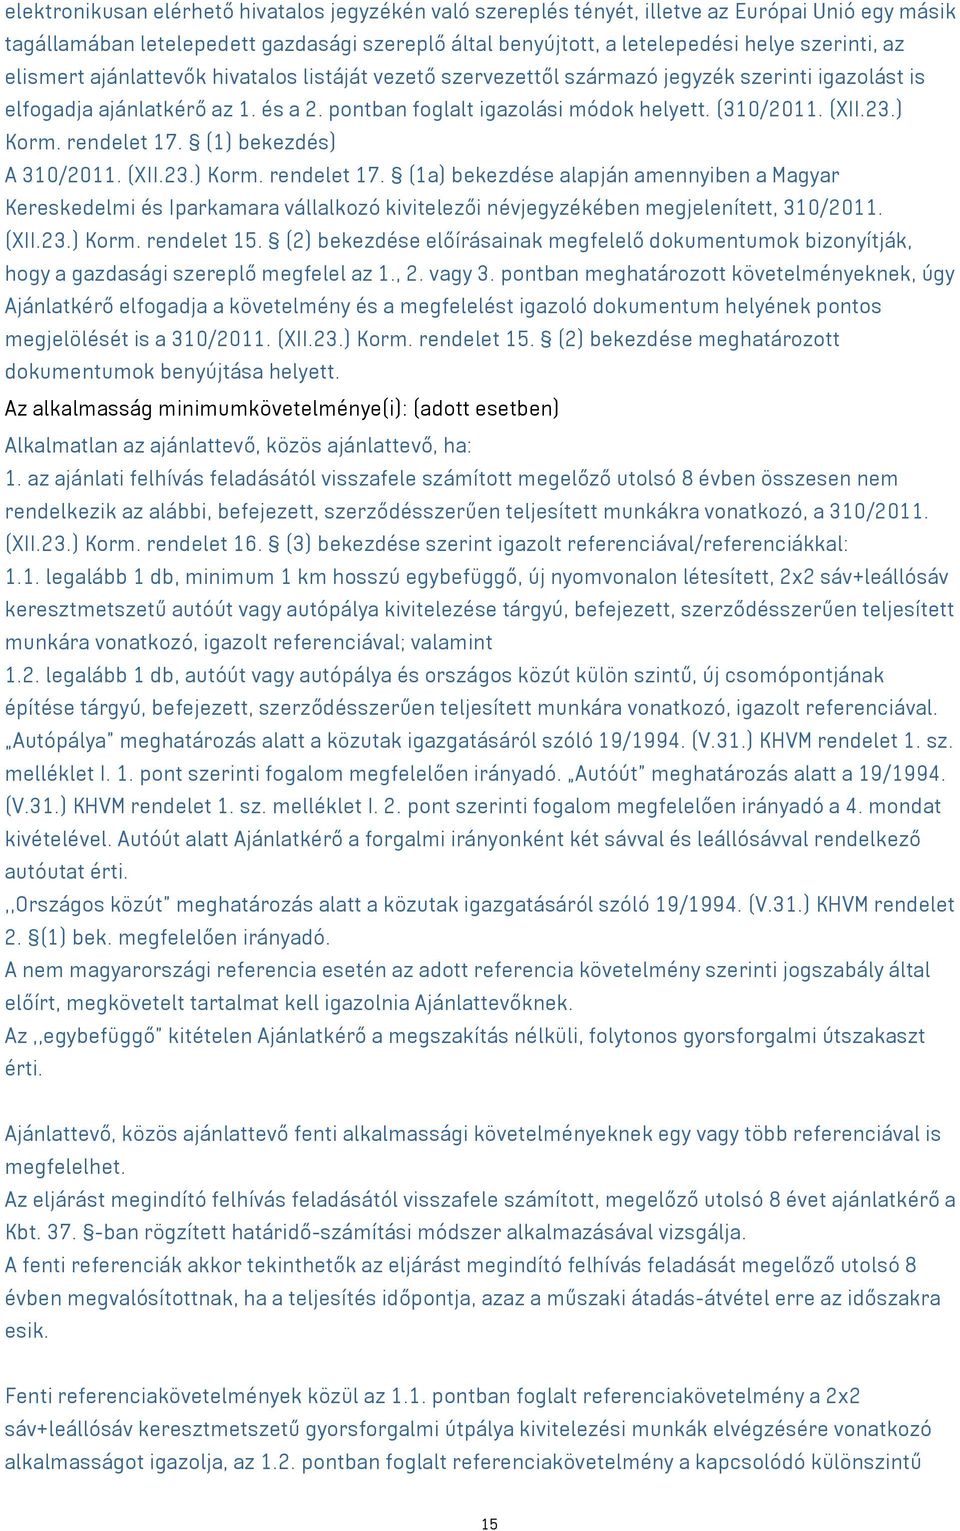 ) Korm. rendelet 17. (1) bekezdés) A 310/2011. (XII.23.) Korm. rendelet 17. (1a) bekezdése alapján amennyiben a Magyar Kereskedelmi és Iparkamara vállalkozó kivitelezői névjegyzékében megjelenített, 310/2011.